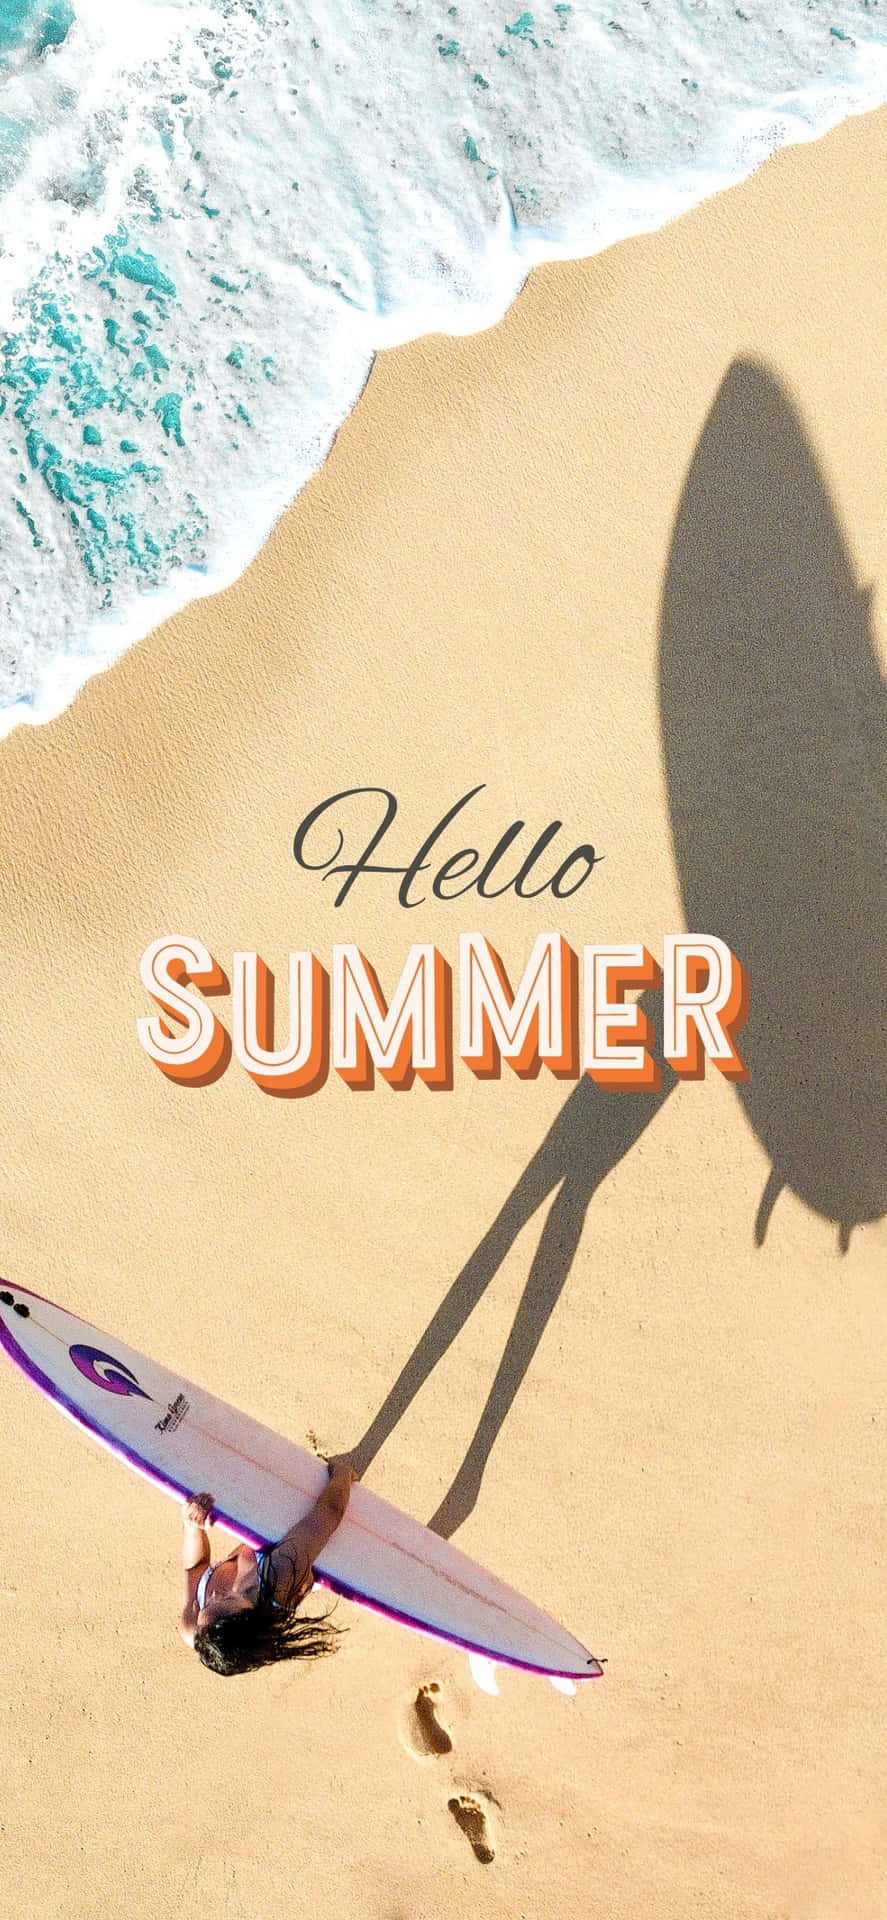 Hello Summer iPhone X Summer Background